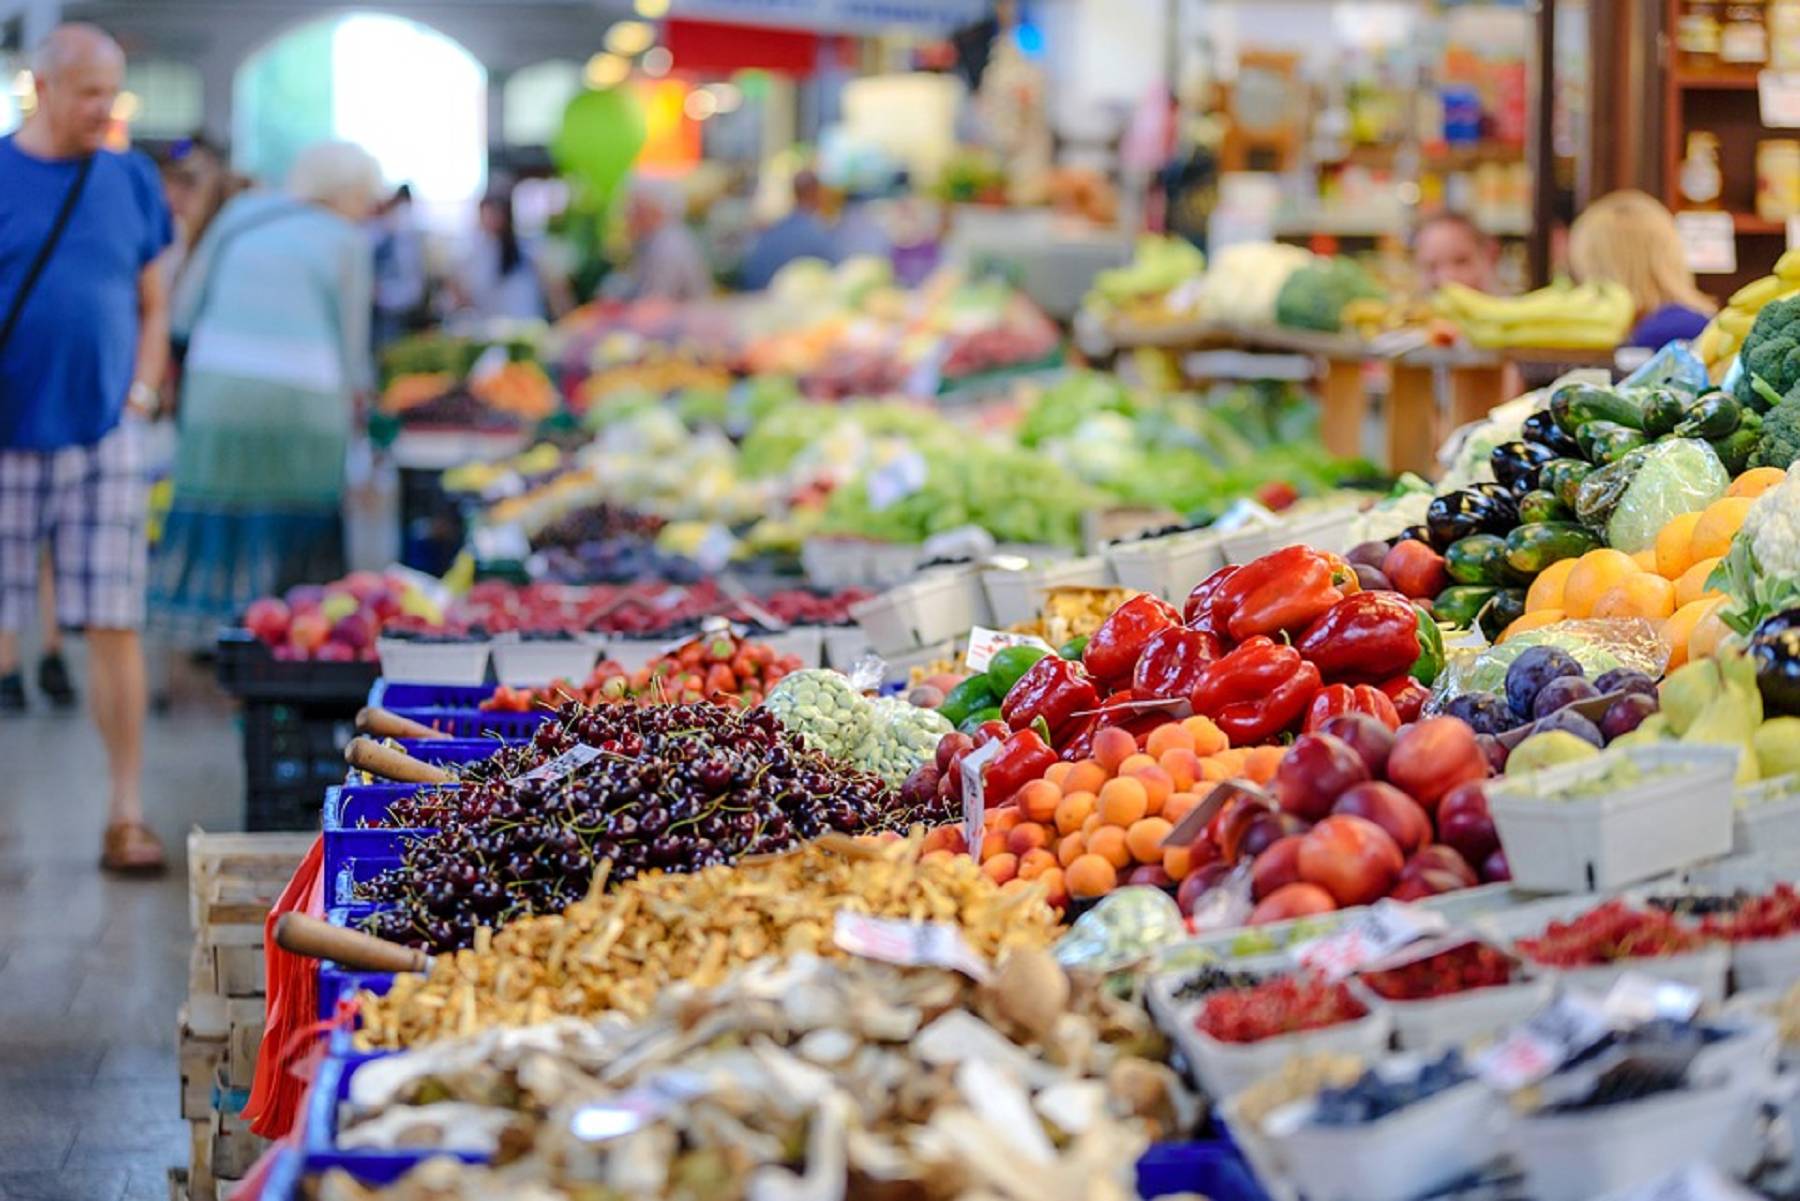 Lebensmittel Kalorientabelle | Wie viele Kalorien haben Früchte, Gemüse, Fleisch und andere Nahrungsmittel?